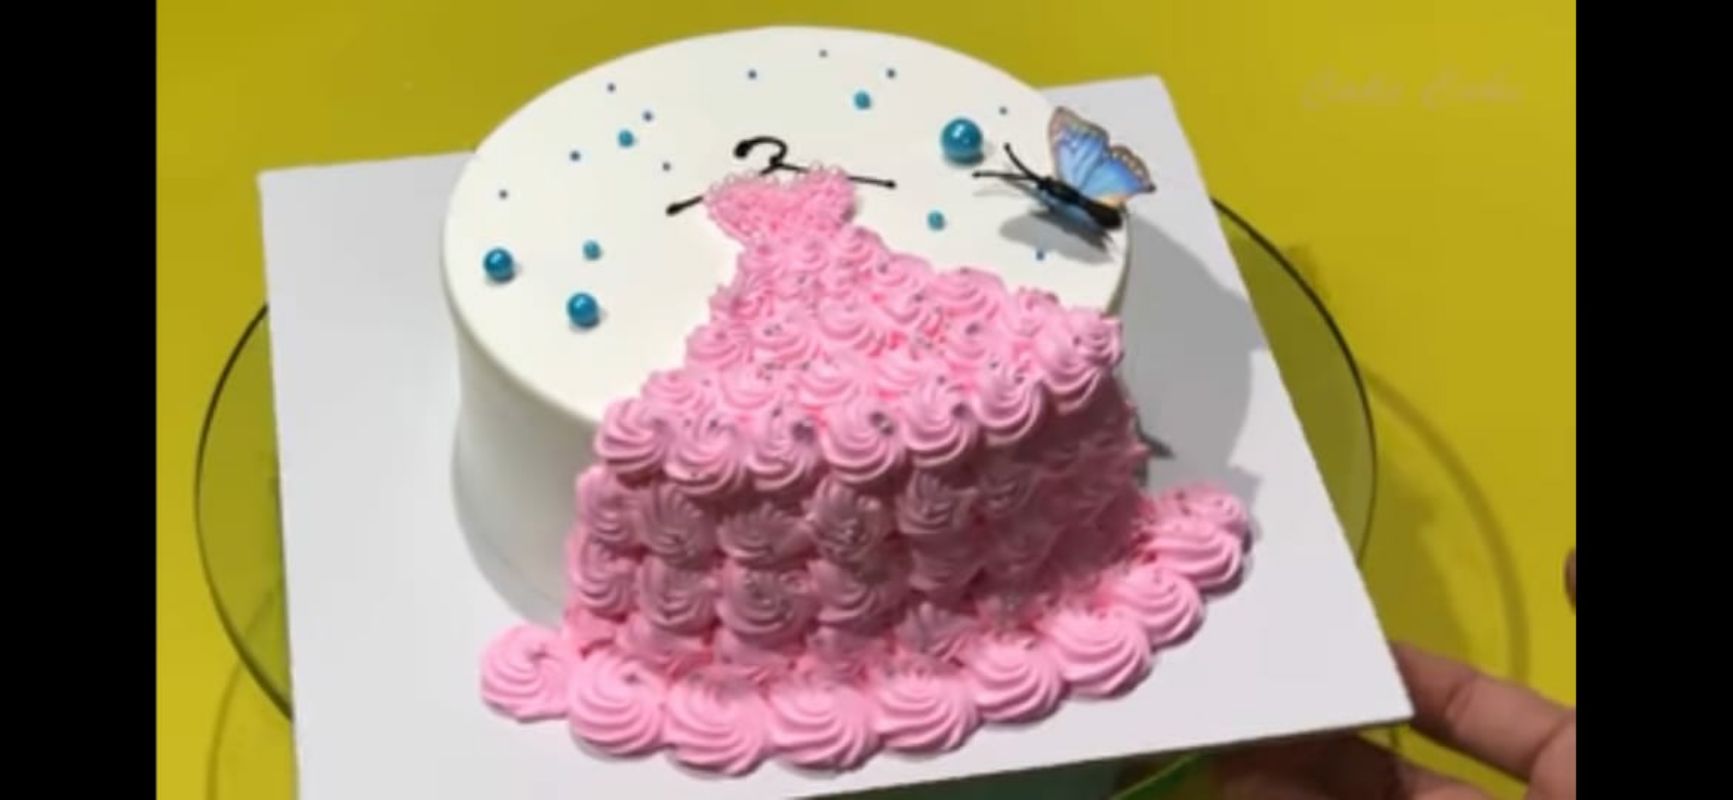 frock cake design | frock cake design for girls | Chocolate cake design |  Doll cake designs, Cake designs for girl, Doll cake tutorial